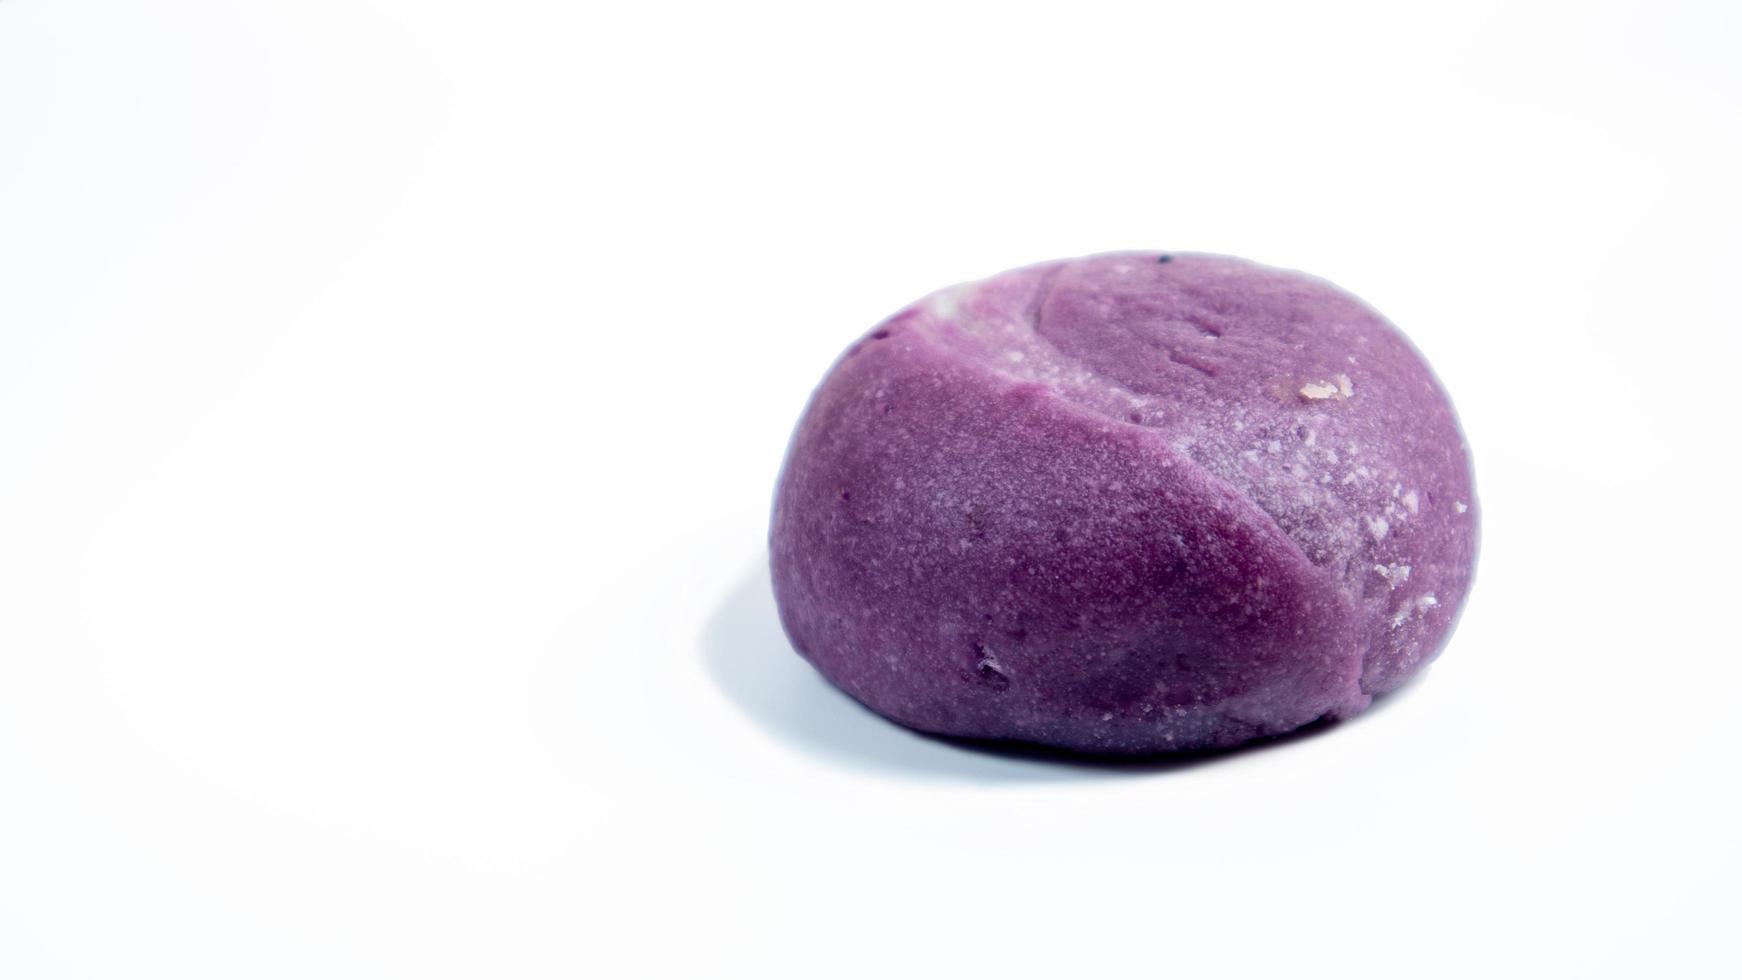 gâteau de lune aux patates douces violettes chinoises photo